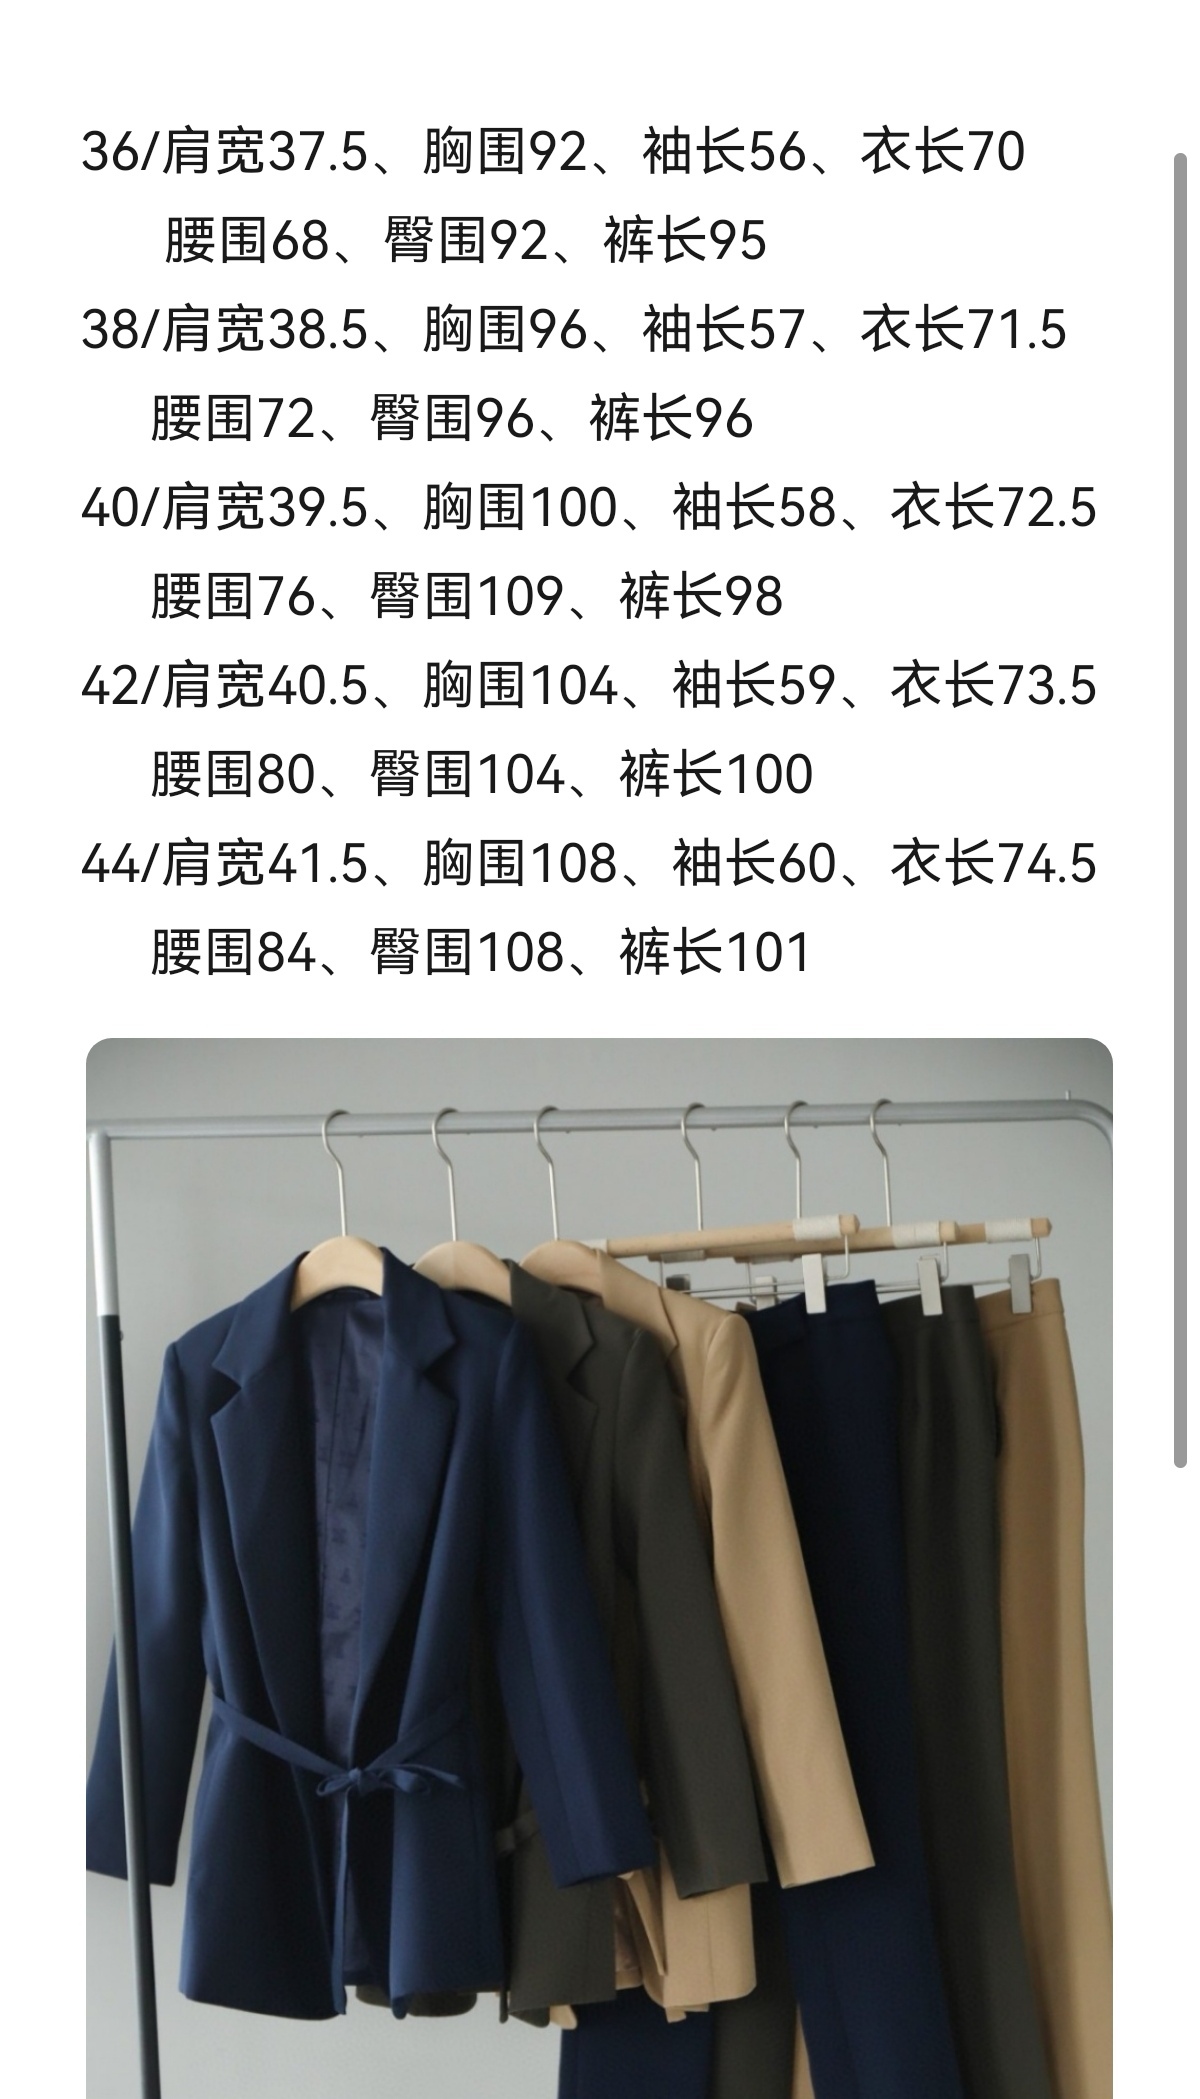 上衣sldyzq裤子ezdjs尺码尺寸颜色：深蓝色，驼色和墨绿色可单独下单，不捆绑销售